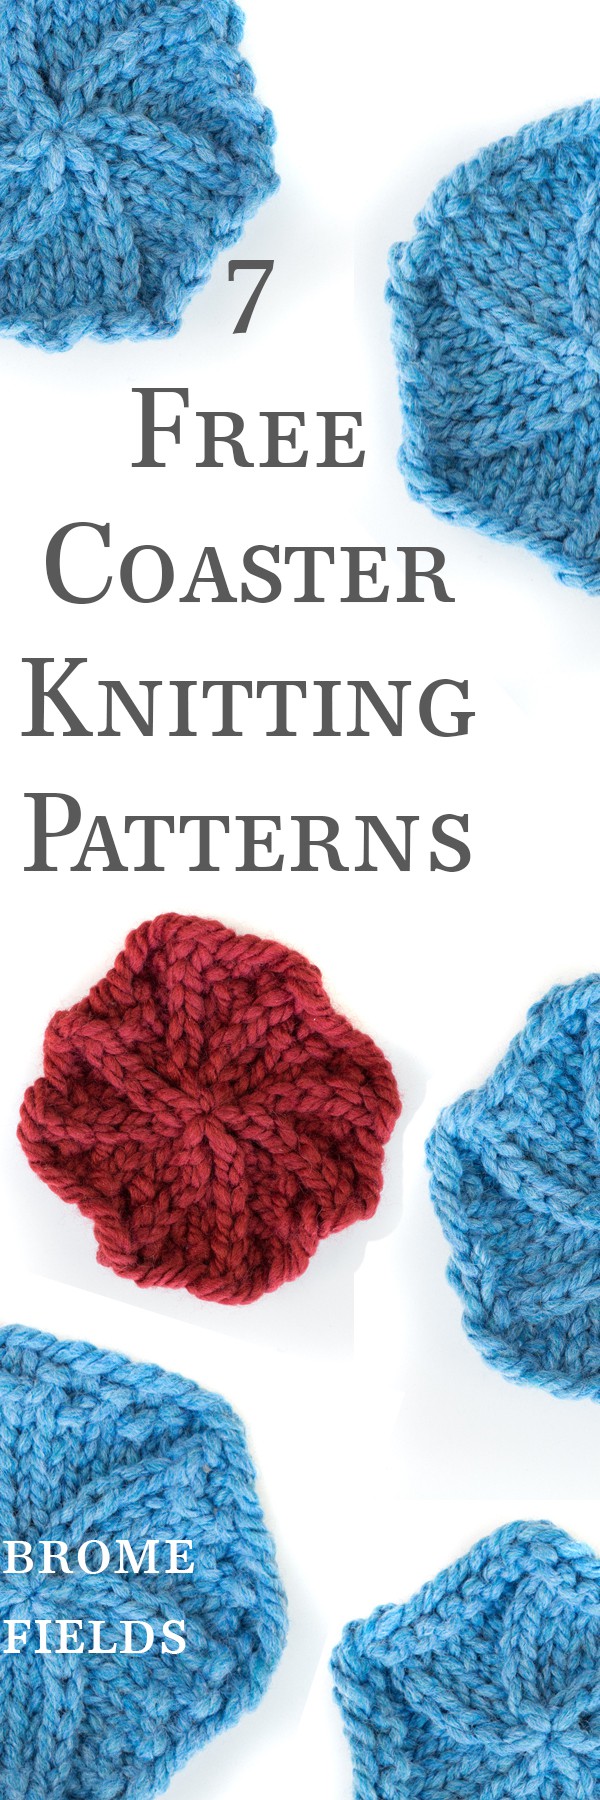 {FREE} Circle Coaster Knitting Pattern - Brome Fields